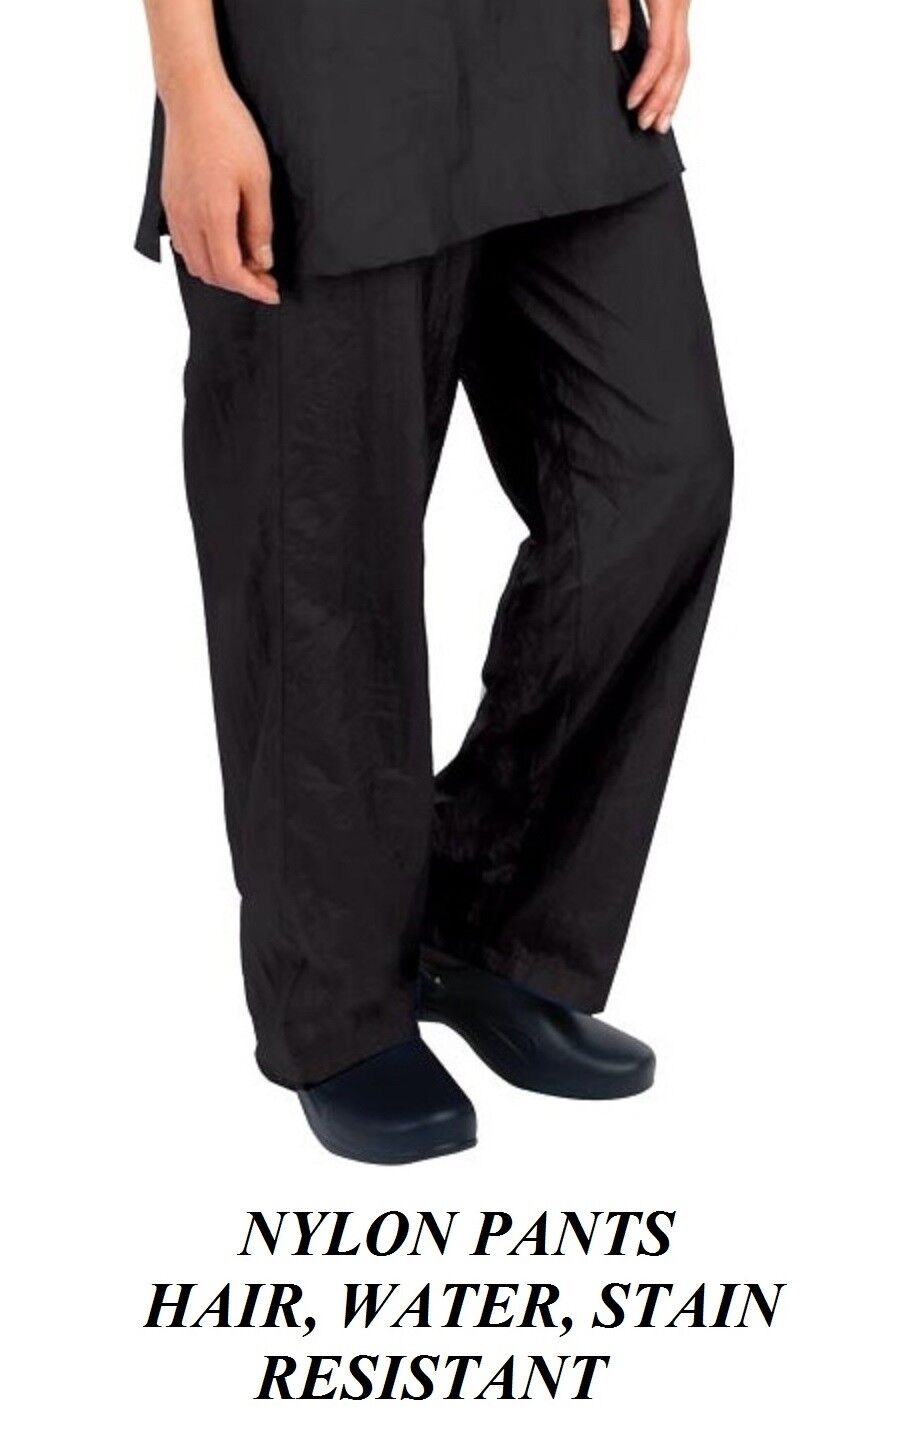 Black GROOMER STYLIST BARBER PANTS Trouser Hair,Water,Soil,Stain Resistant NYLON